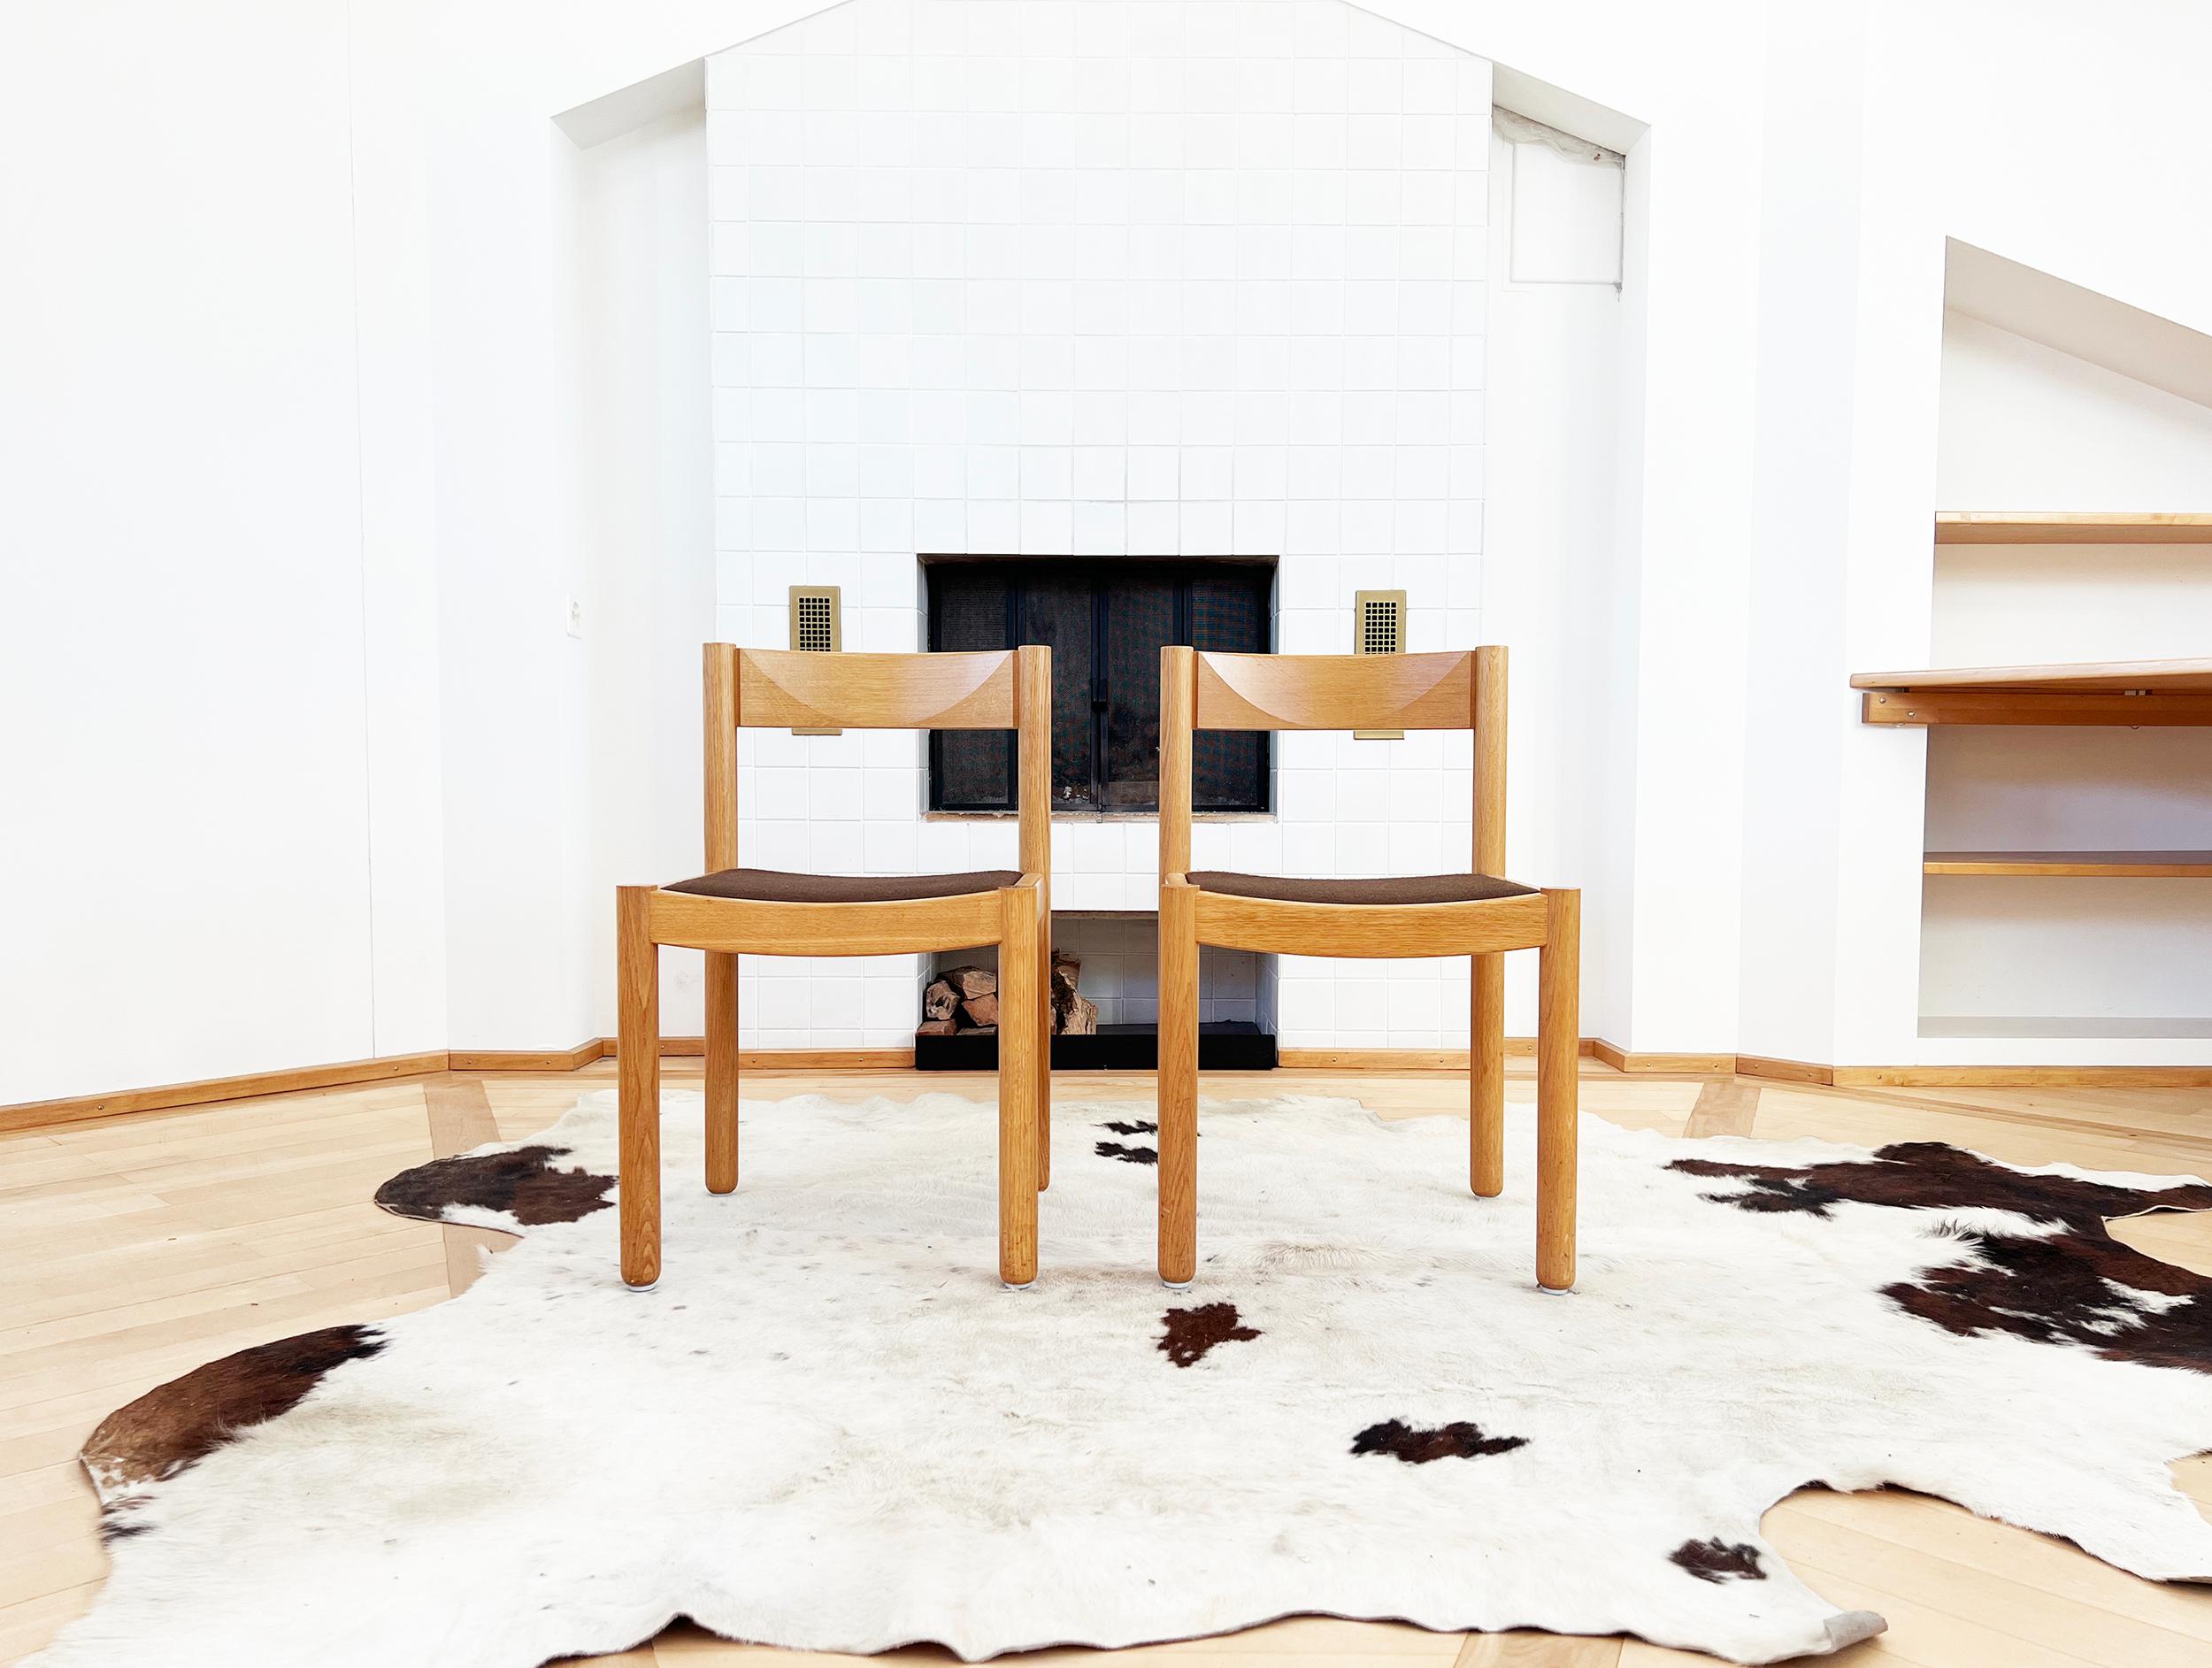 Ensemble de six chaises en bois de chêne modèle 6200 de Robert et Trix Haussmann de Zurich, Suisse, datant des années 1960. En excellent état vintage, ne semblant pratiquement pas avoir été utilisé.

Chaises design ergonomiques et très confortables